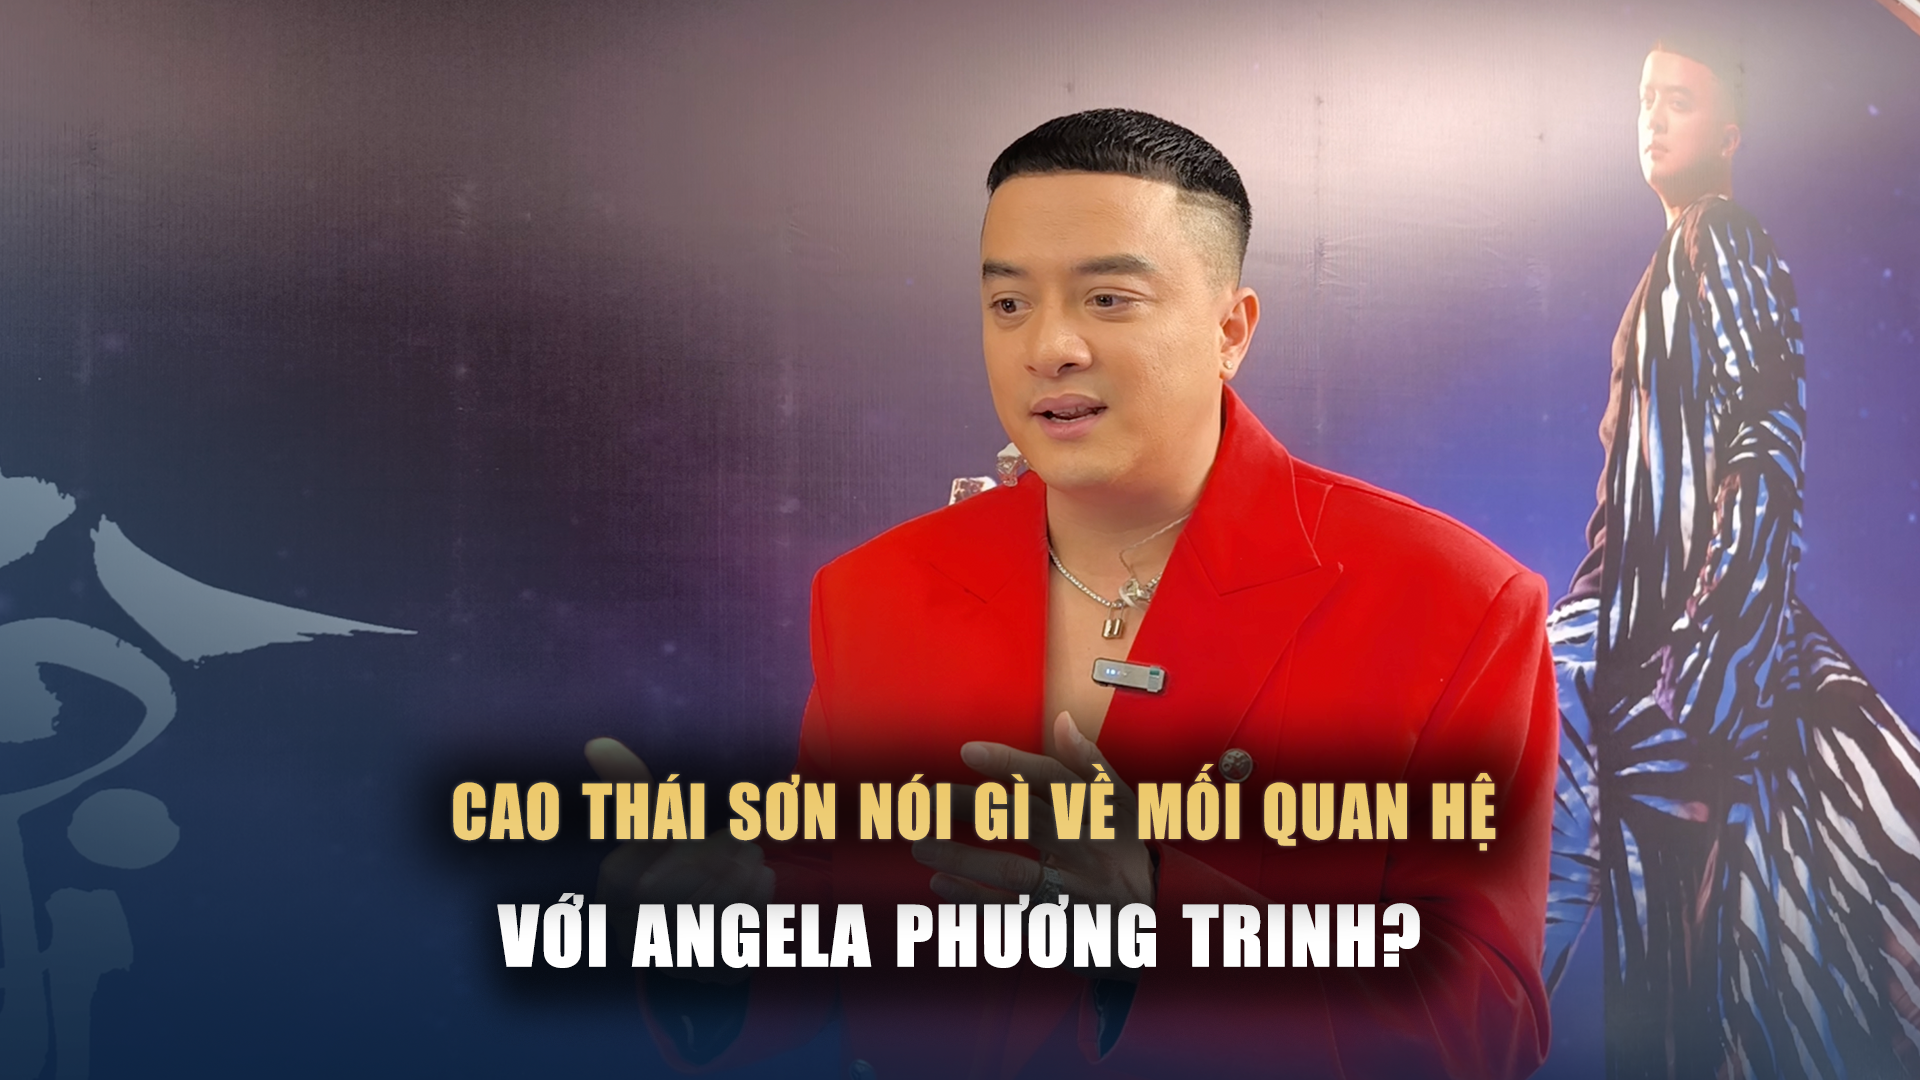 Cao Thái Sơn nói gì về mối quan hệ hiện tại với Angela Phương Trinh?- Ảnh 1.